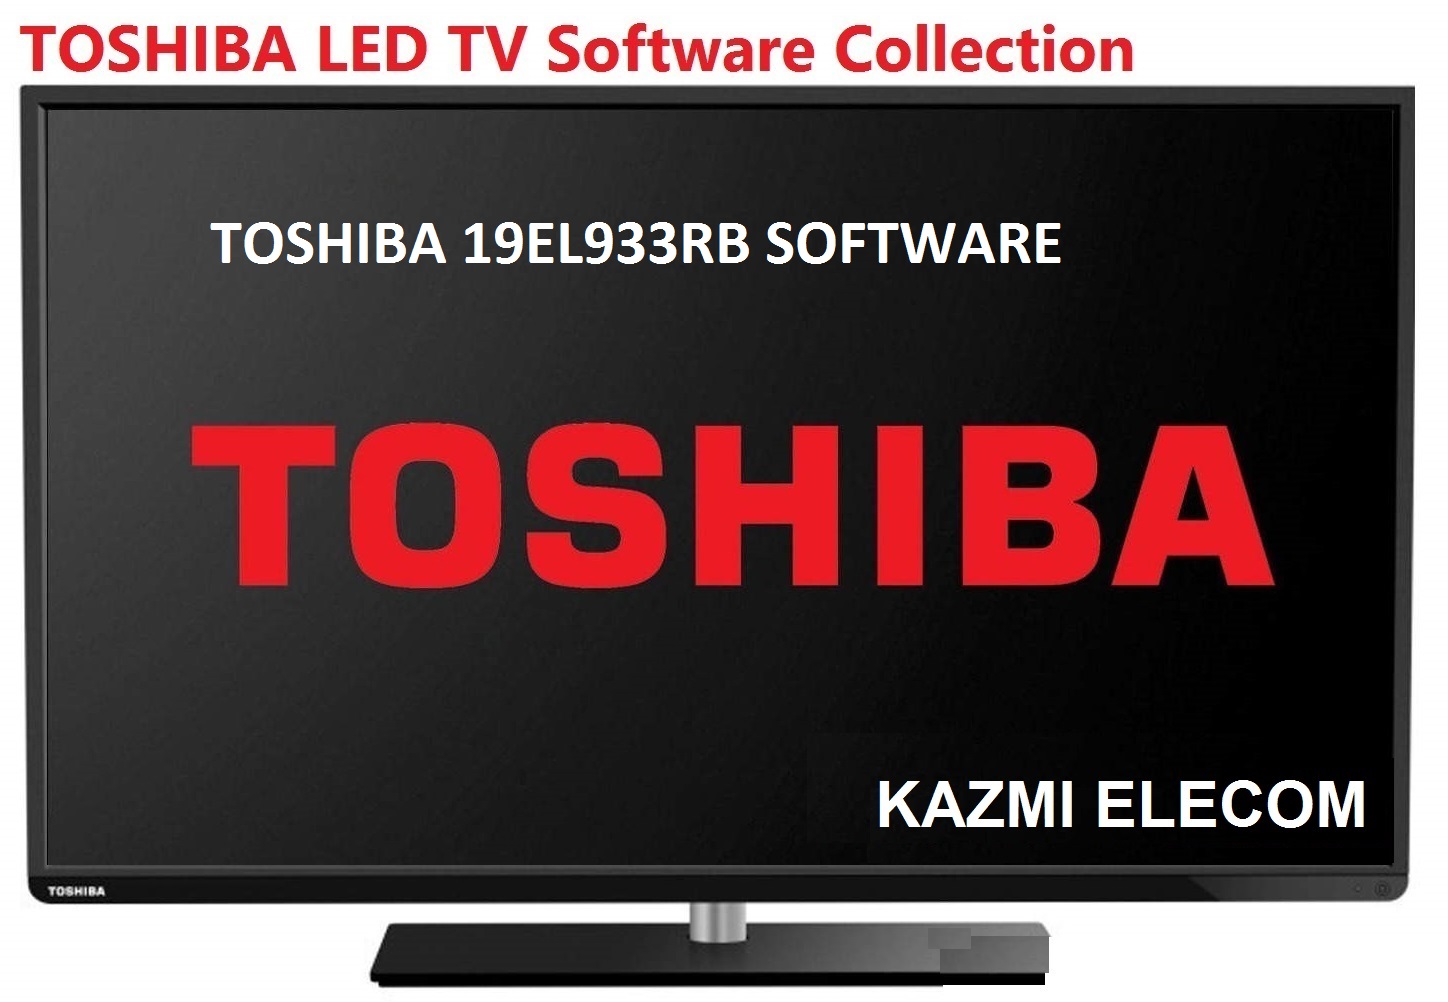 Toshiba 19El933Rb